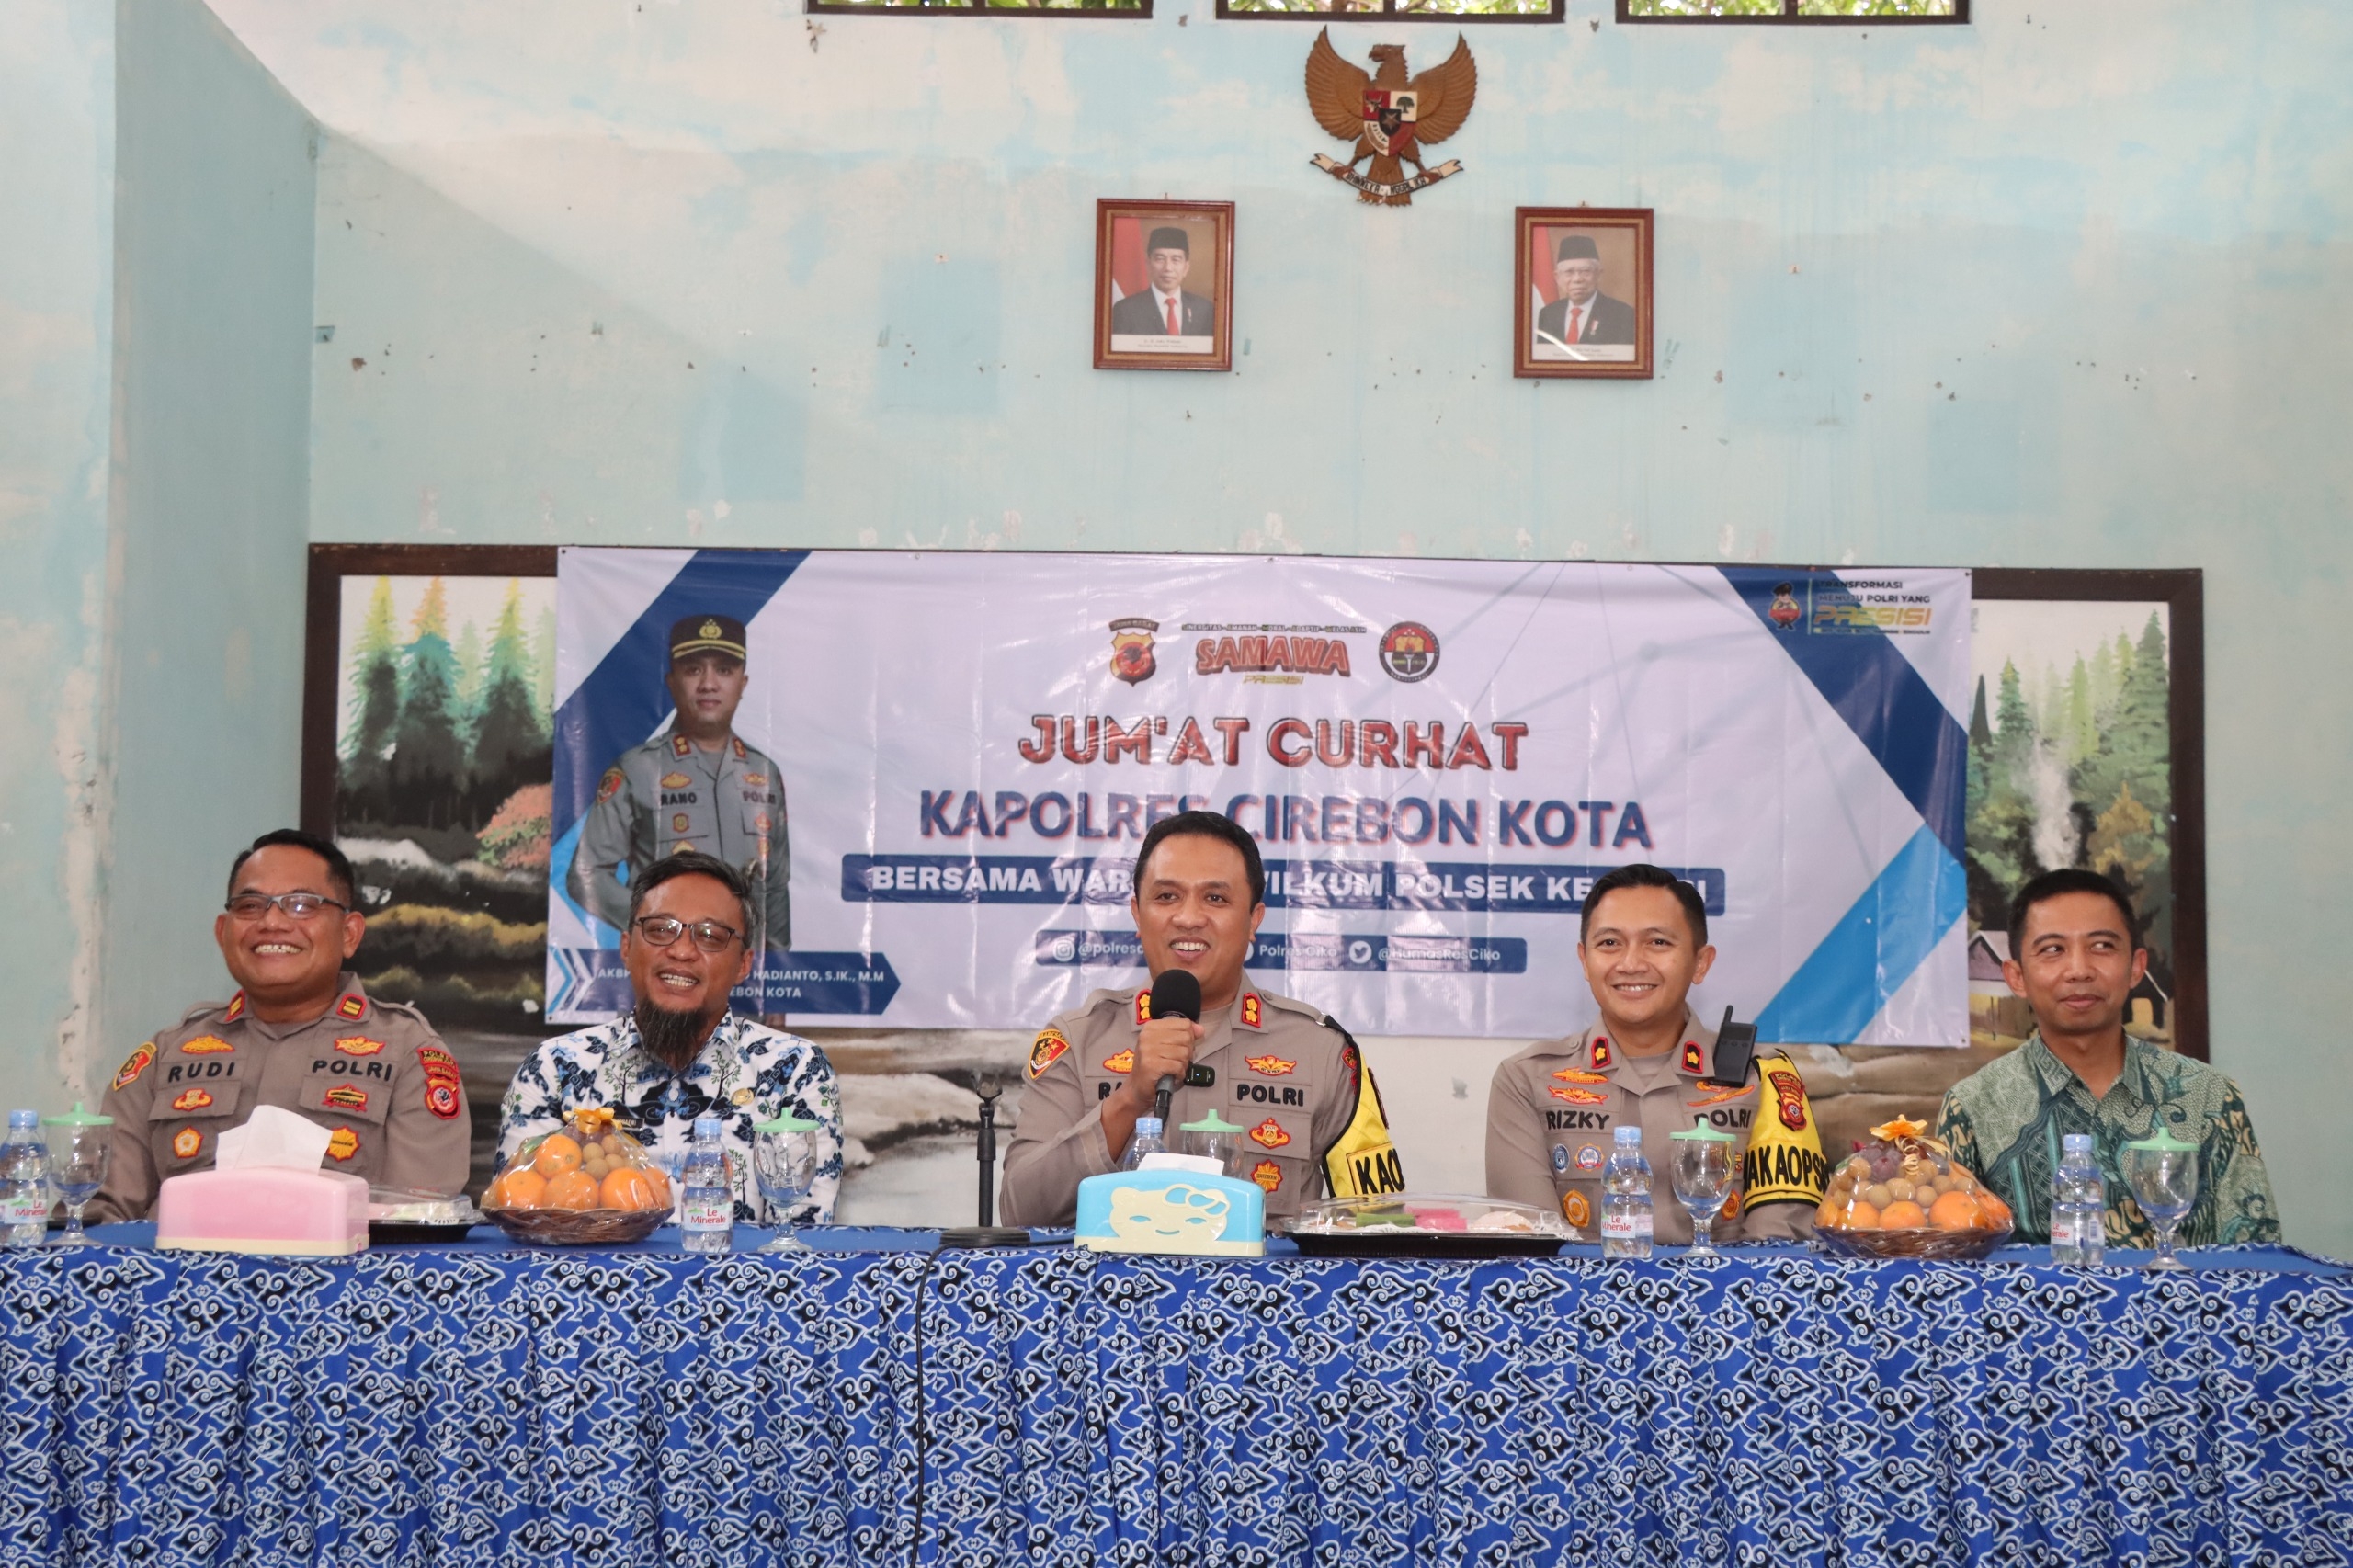 Tampung Aspirasi Masyarakat, Kapolres Cirebon Kota Gelar Jum'at Curhat